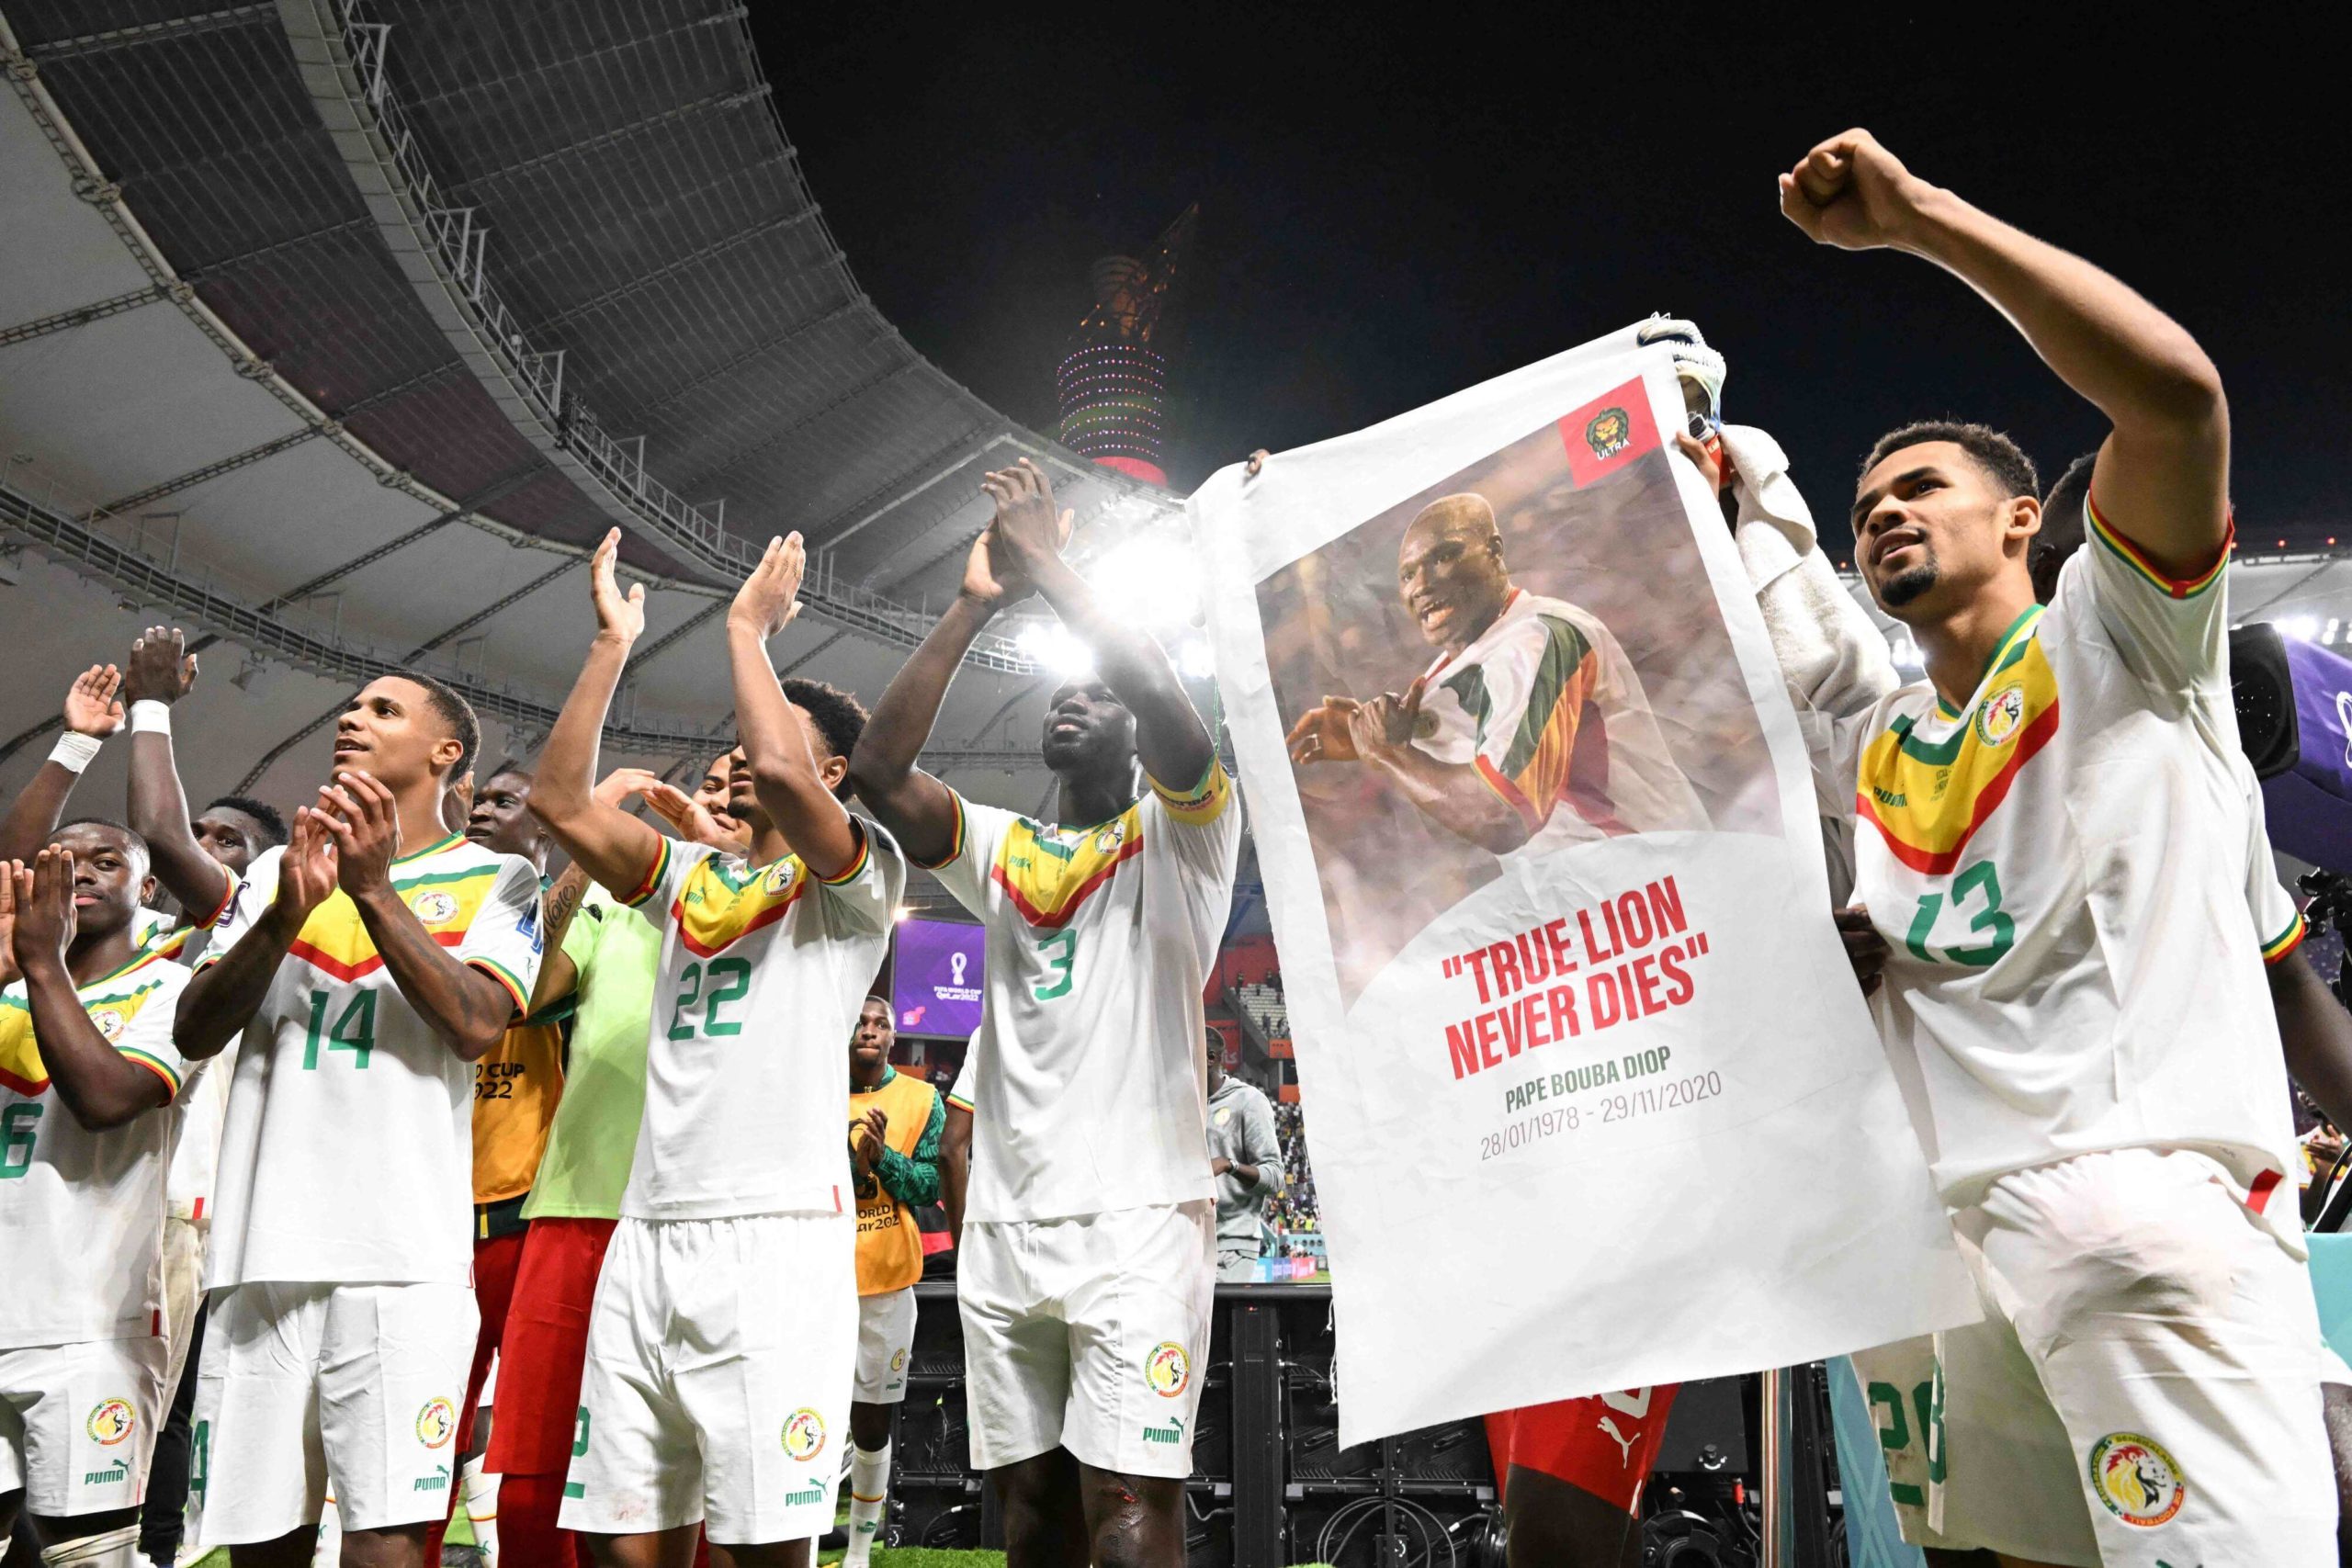 بلغ المنتخب السنغالي لكرة القدم، بطل القارة السمراء، الدور ثمن النهائي للمرة الثانية في تاريخه